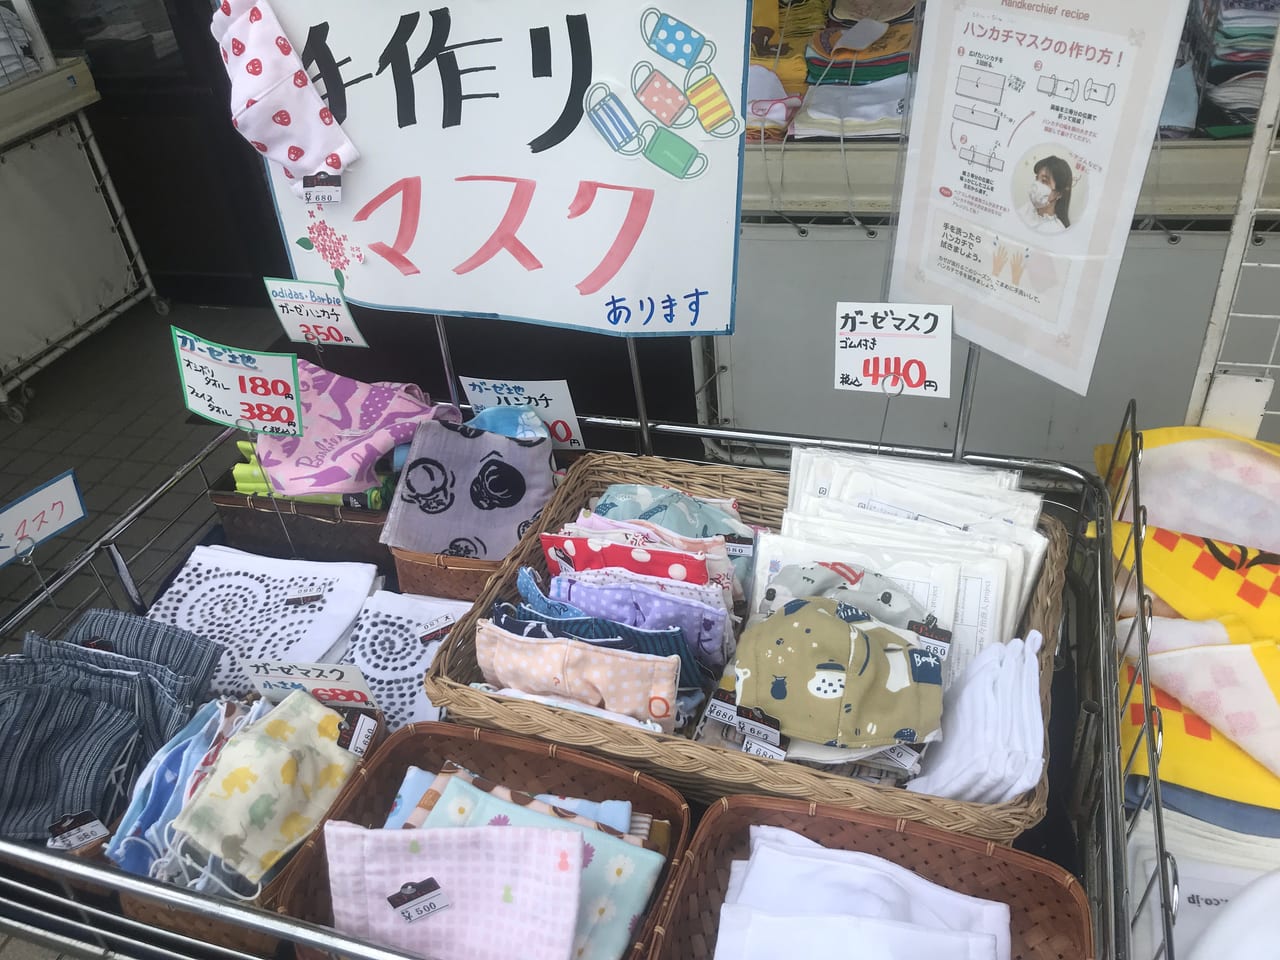 松山市 ハンドメイドの布マスク販売情報 タオル屋さん 手芸屋さん 雑貨屋さんなどで数量限定で布マスクを販売されています 号外net 松山市 中予地方